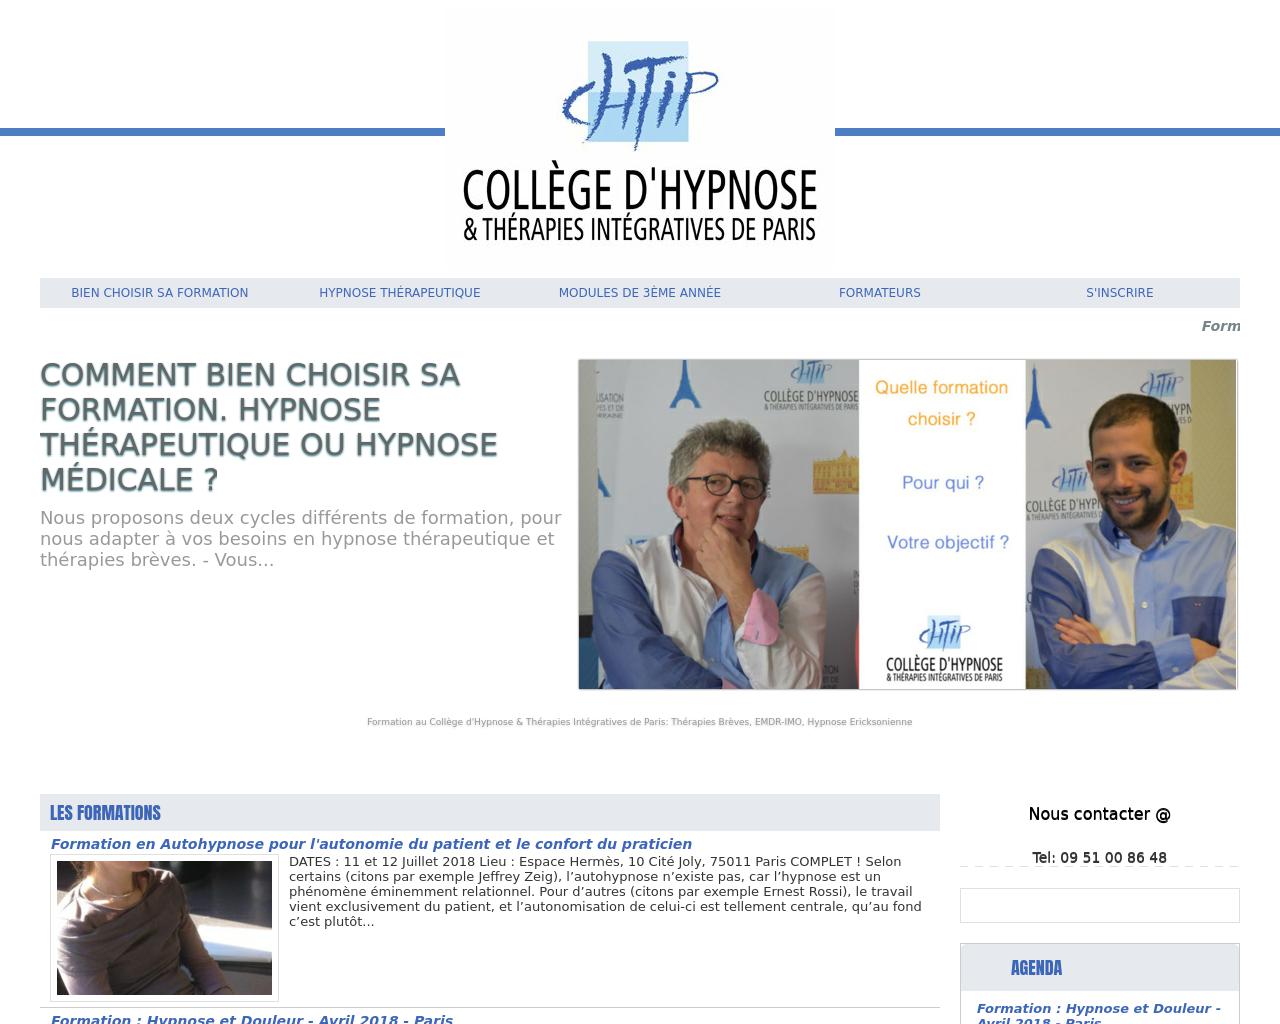 Formation en Hypnose Ericksonienne et Thérapies Brèves Intégratives à Paris 